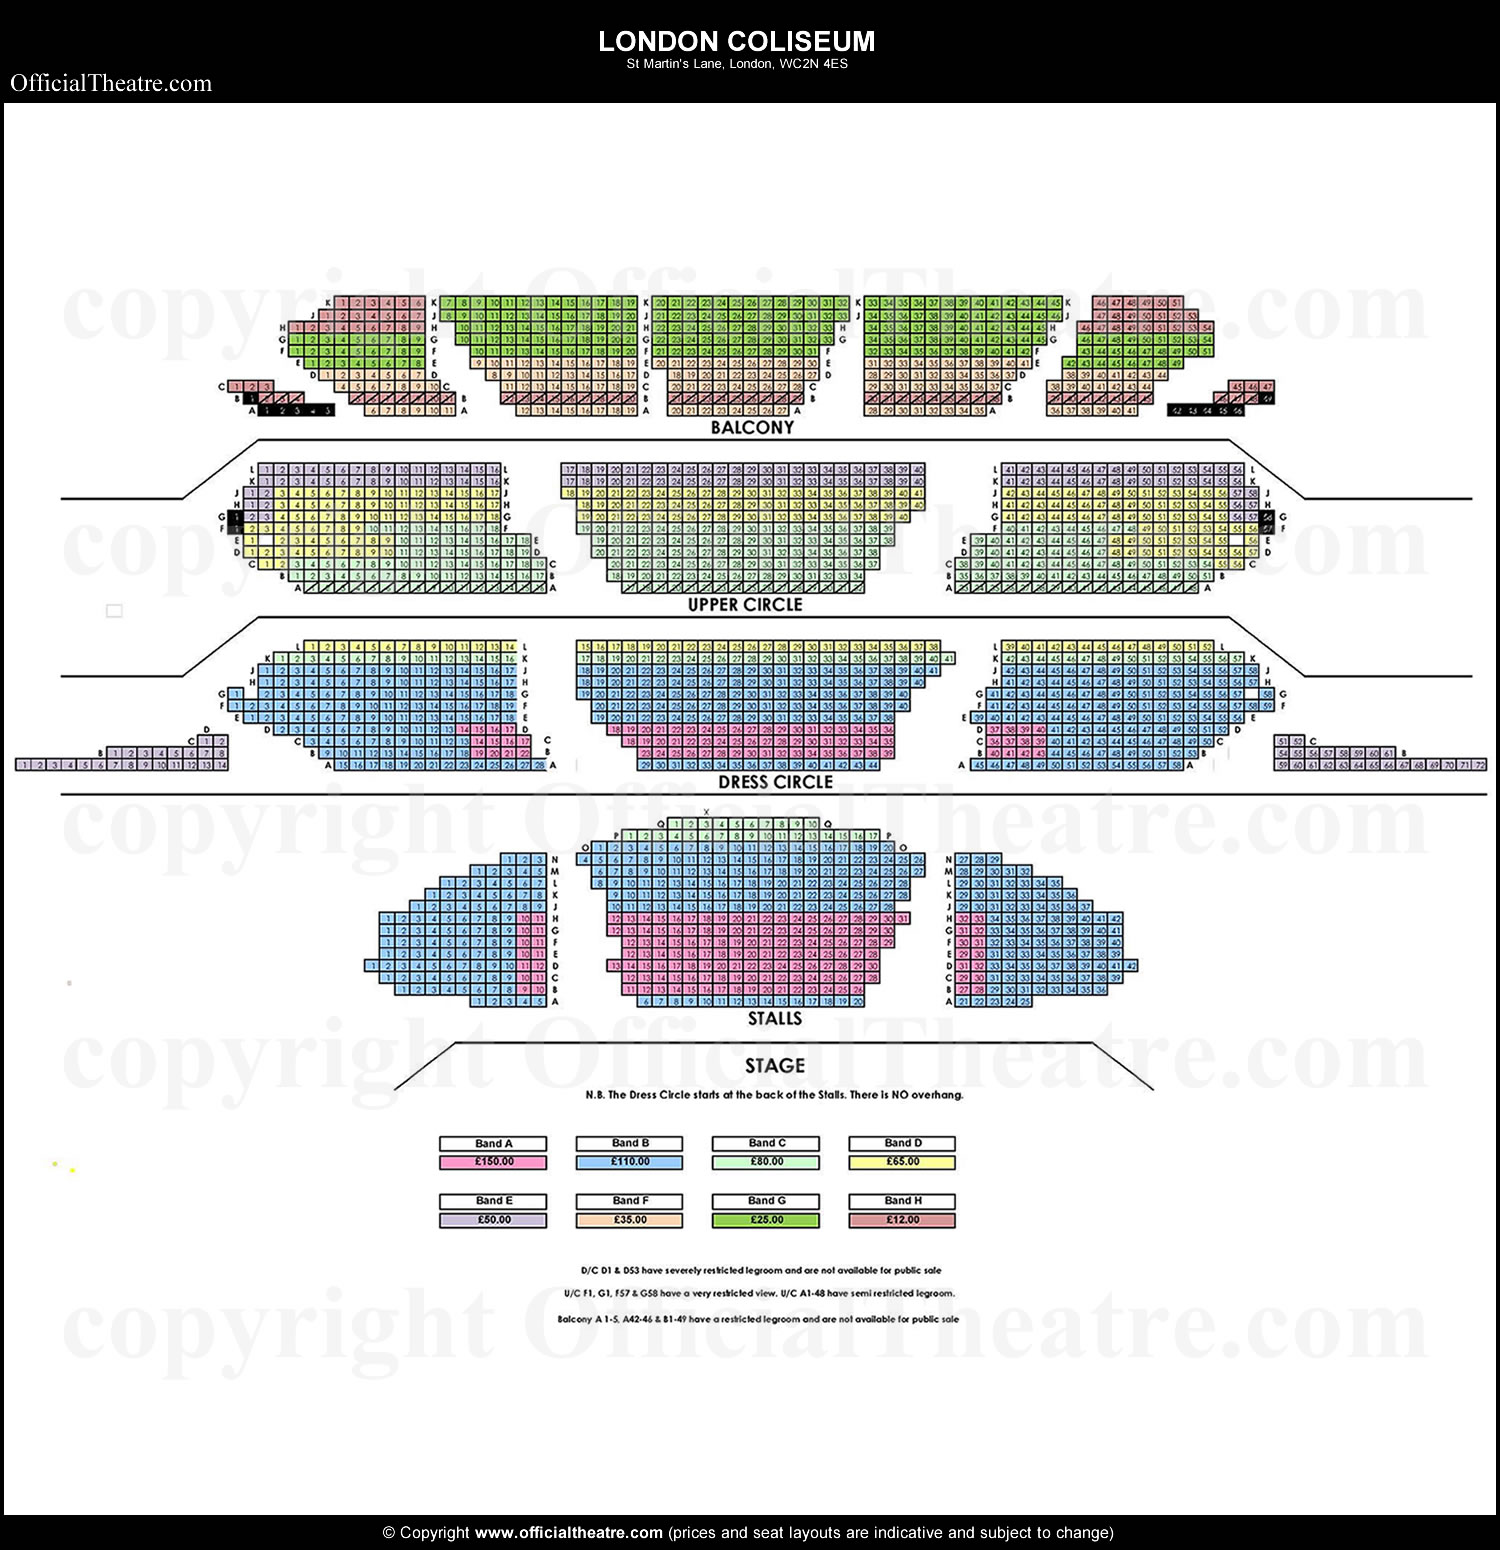 London Coliseum seating plan